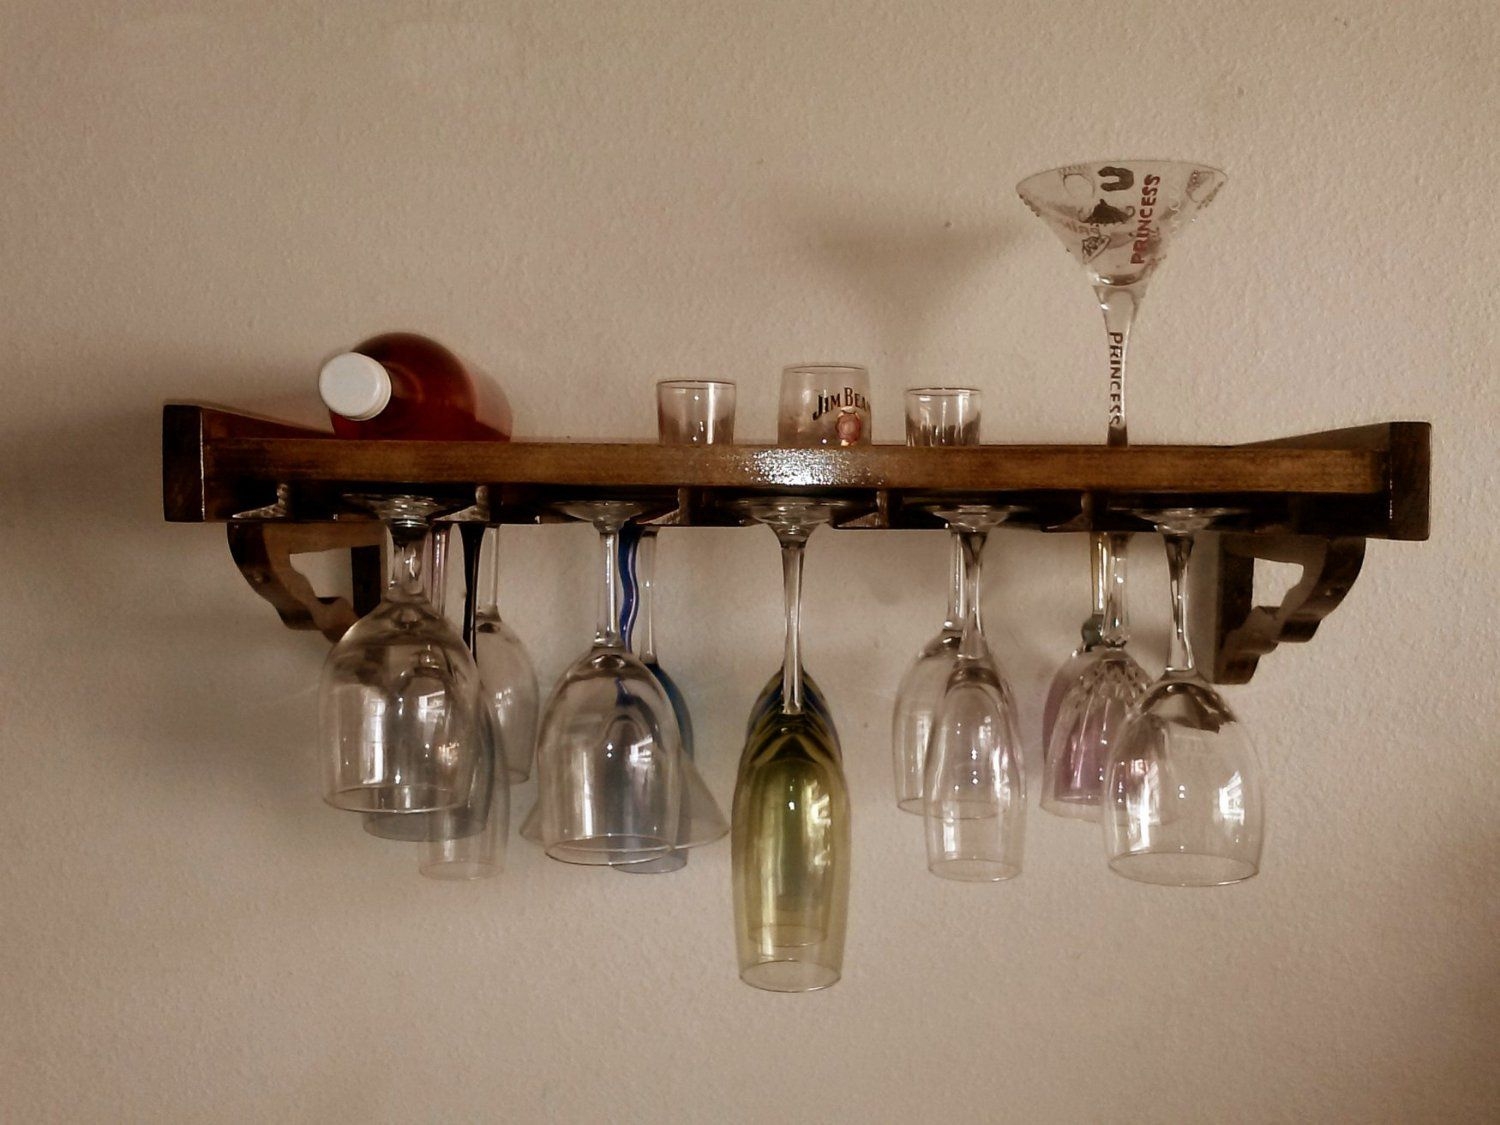 Wall mounted bottle rack